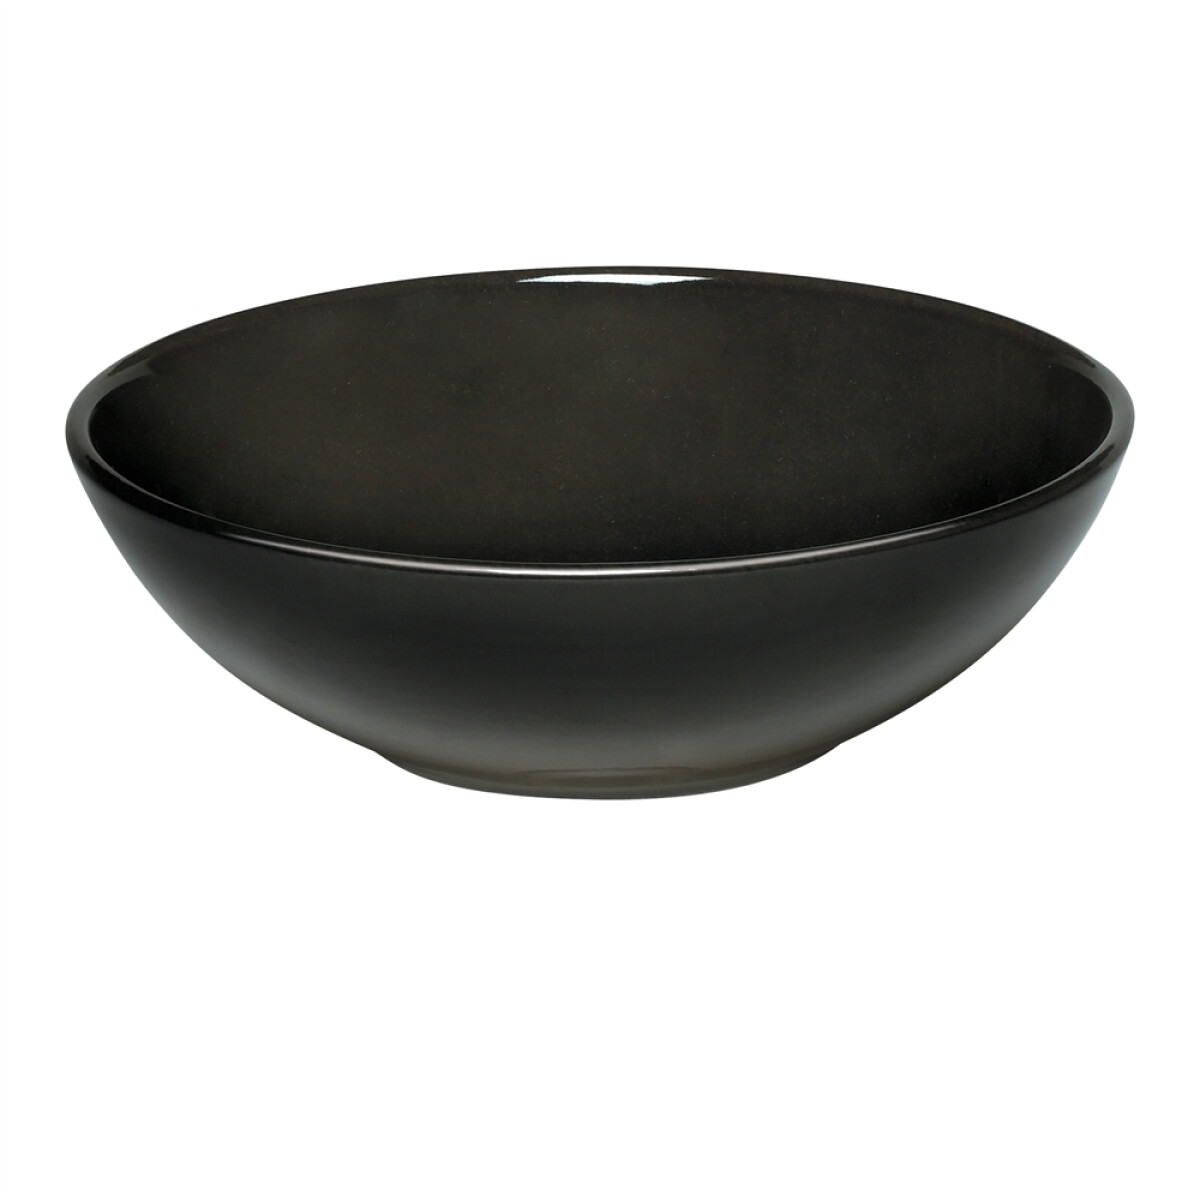 Керамична купа за салата EMILE HENRY LARGE SALAD BOWL, голяма - Ø 28 см, цвят черен